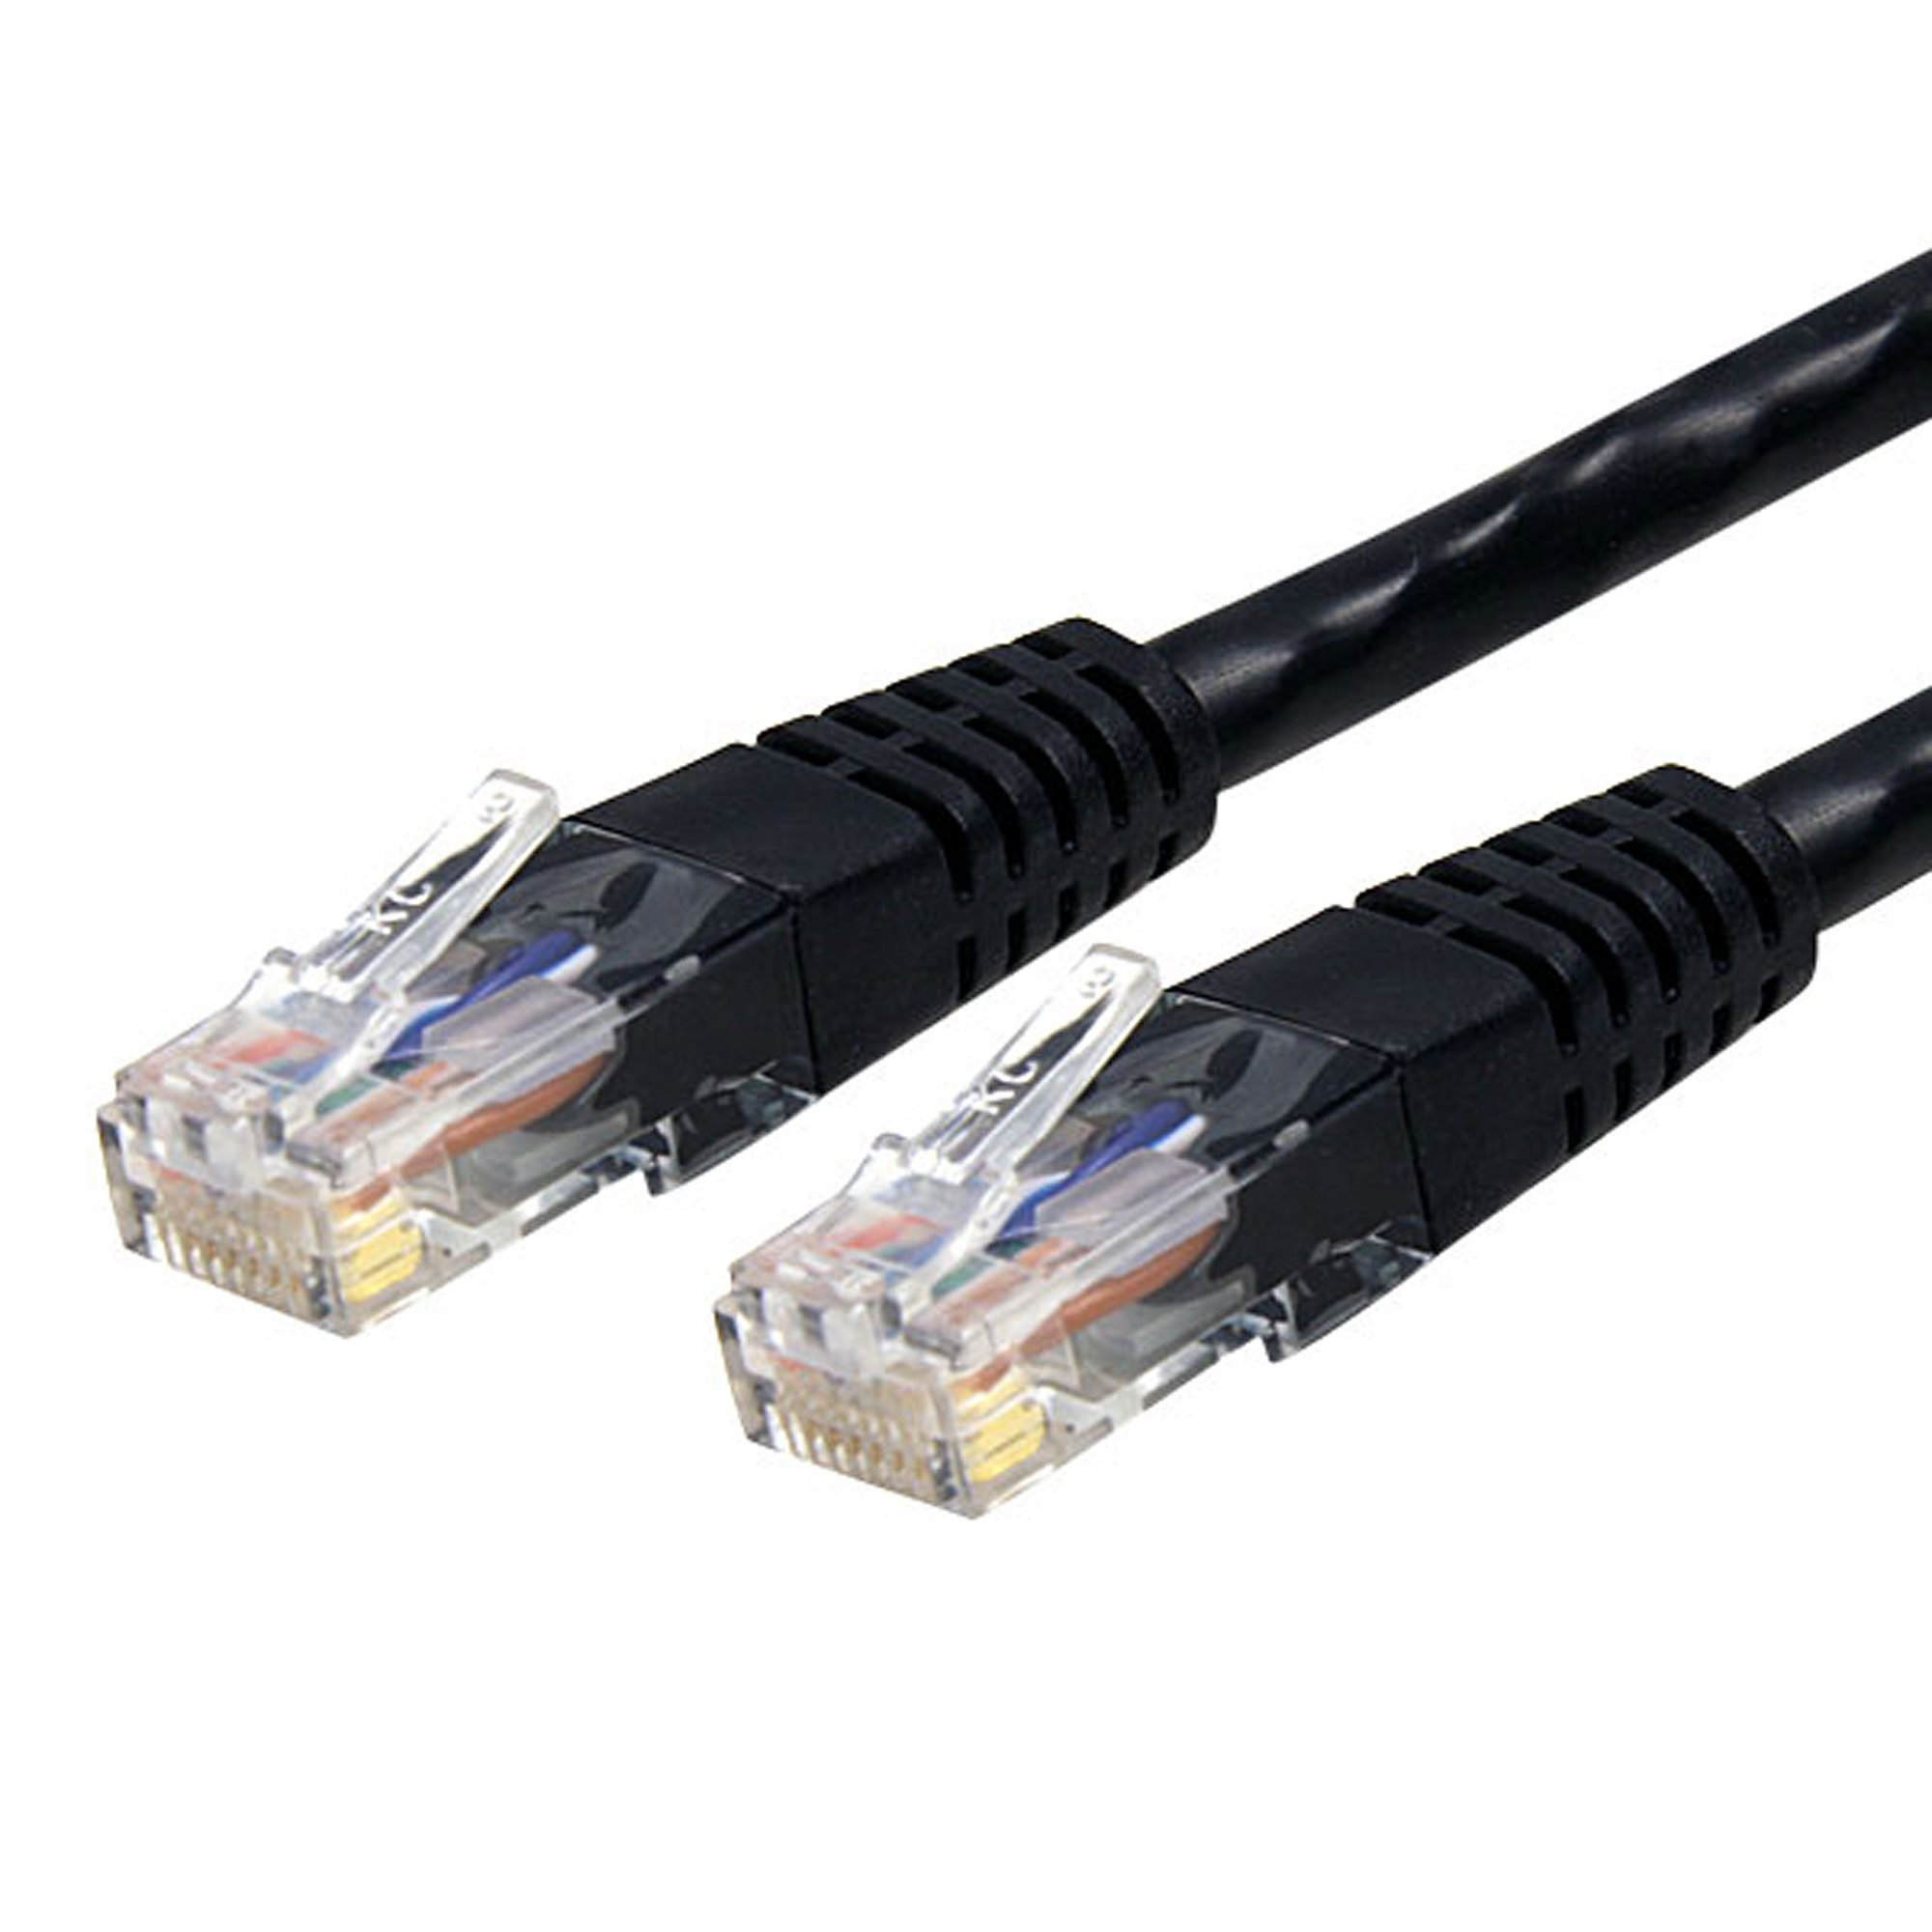 Cable 91Cm Red Gigabit  Cat6 Utp Rj45 Patch Negro  Startech C6Patch3Bk